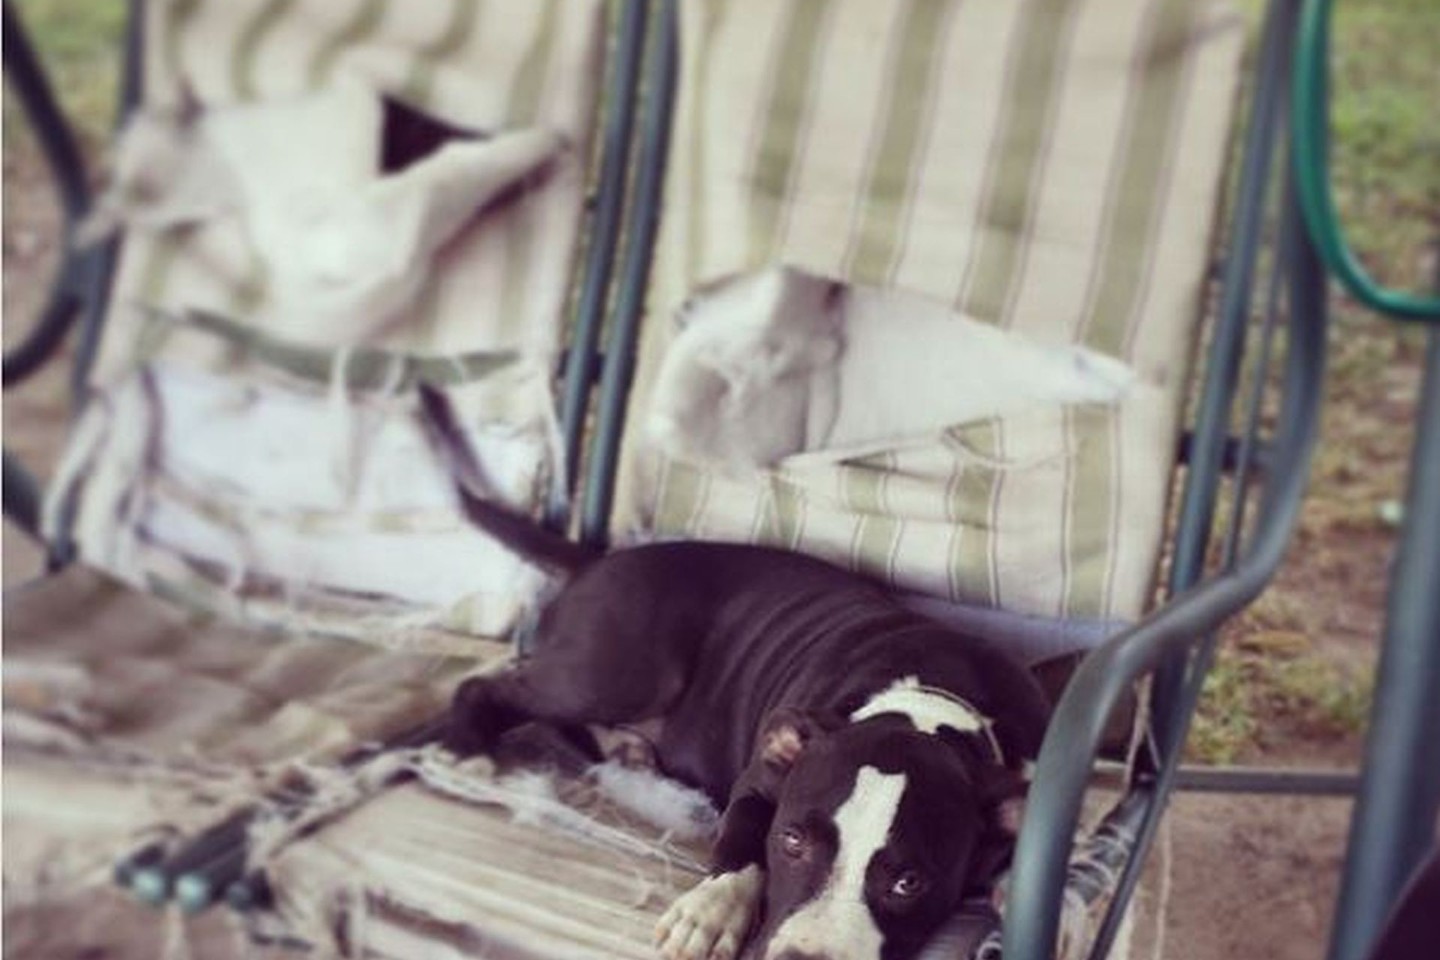 Savo niekšybėmis šunys mums gali neretai įsiutinti, bet pažvelgus į jų mielus snukučius ilgai pykti tiesiog neįmanoma.<br>Instagram.com nuotr.